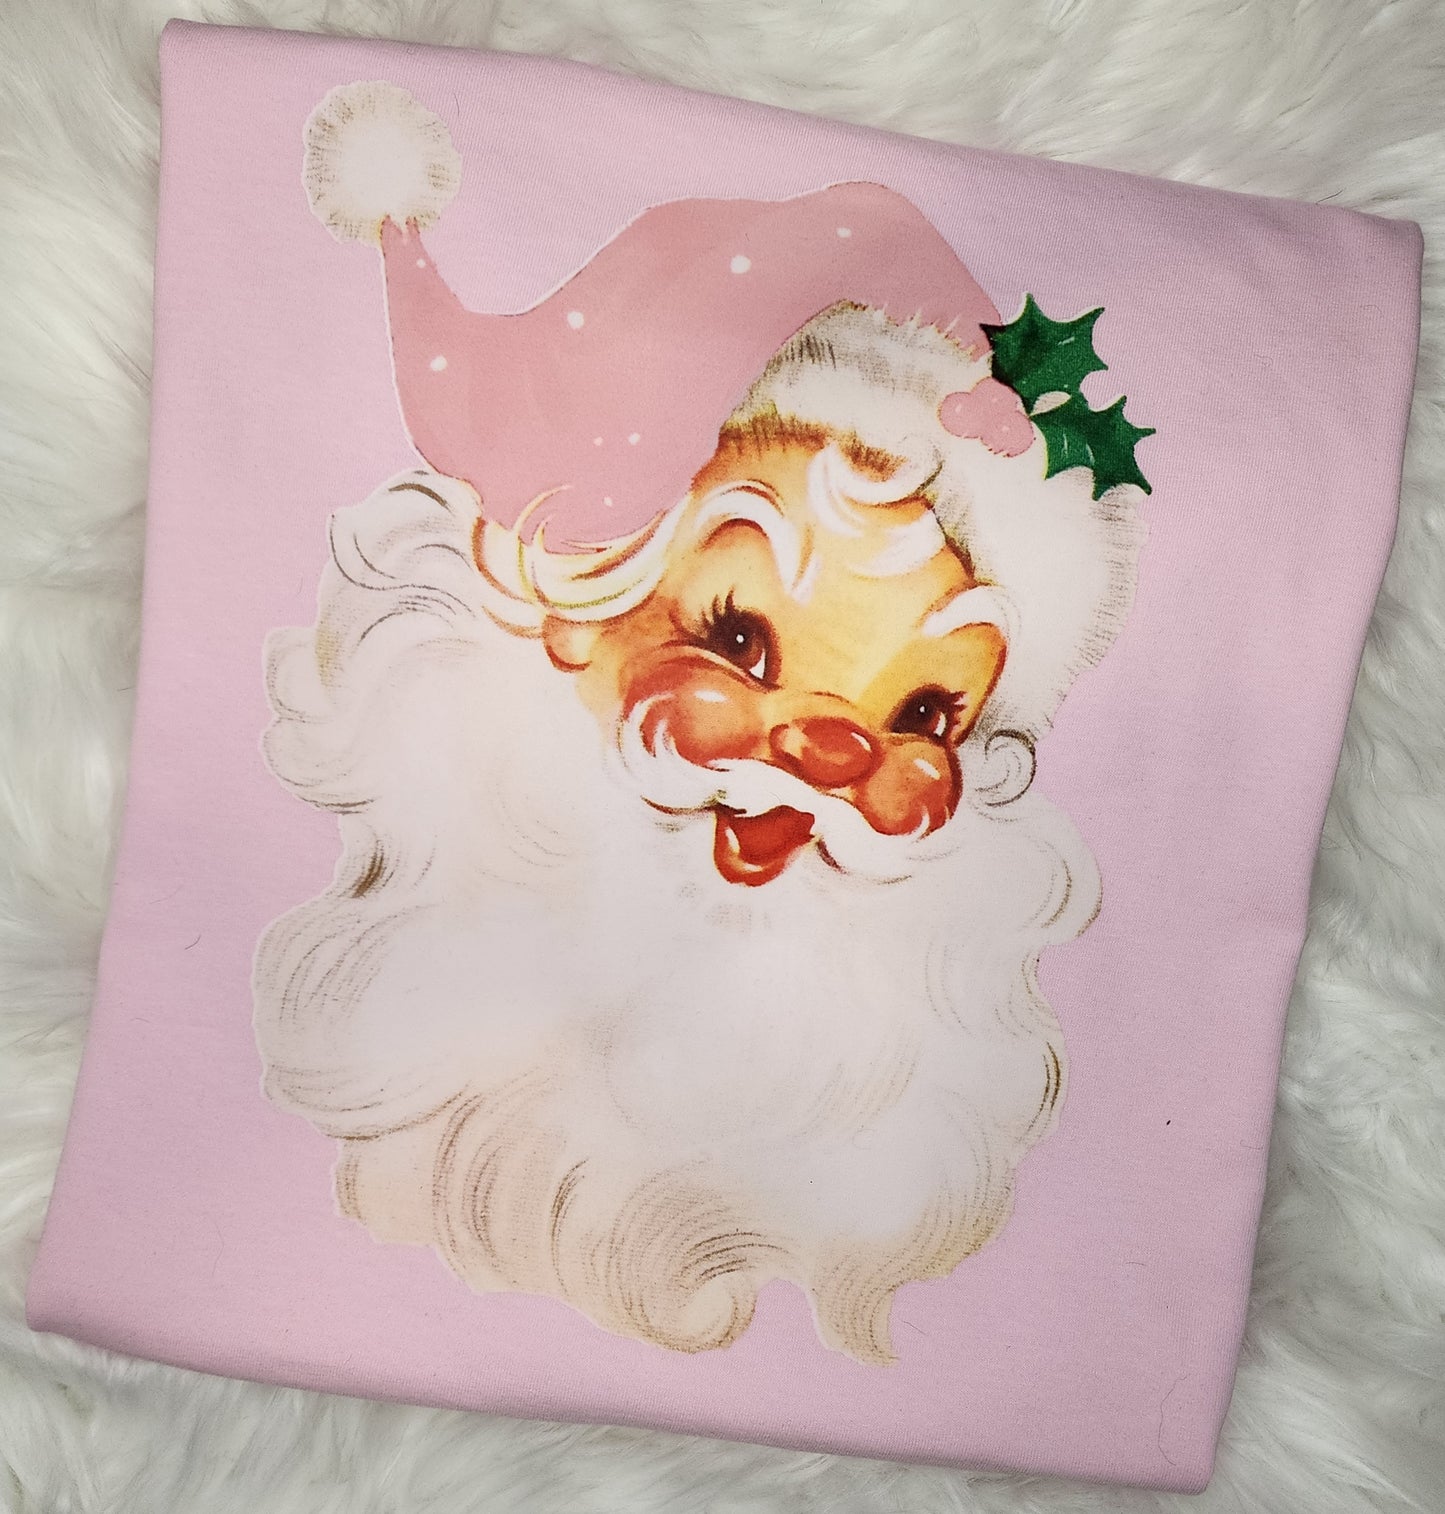 Pink Santa